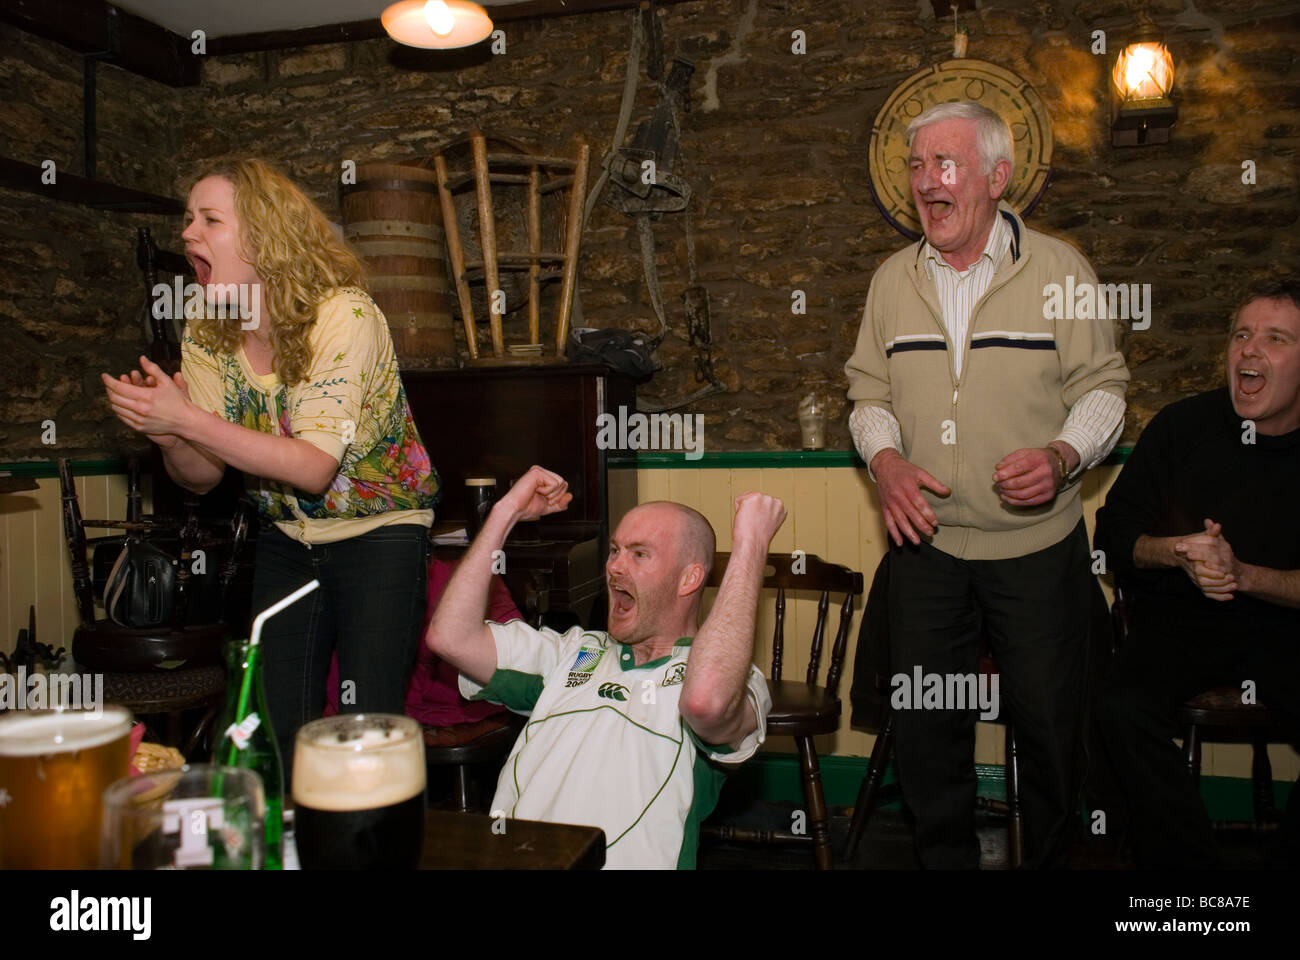 Les partisans irlandais célèbrent une Irlande essayez en remportant des tournois de rugby des six nations en mars 2009 Banque D'Images